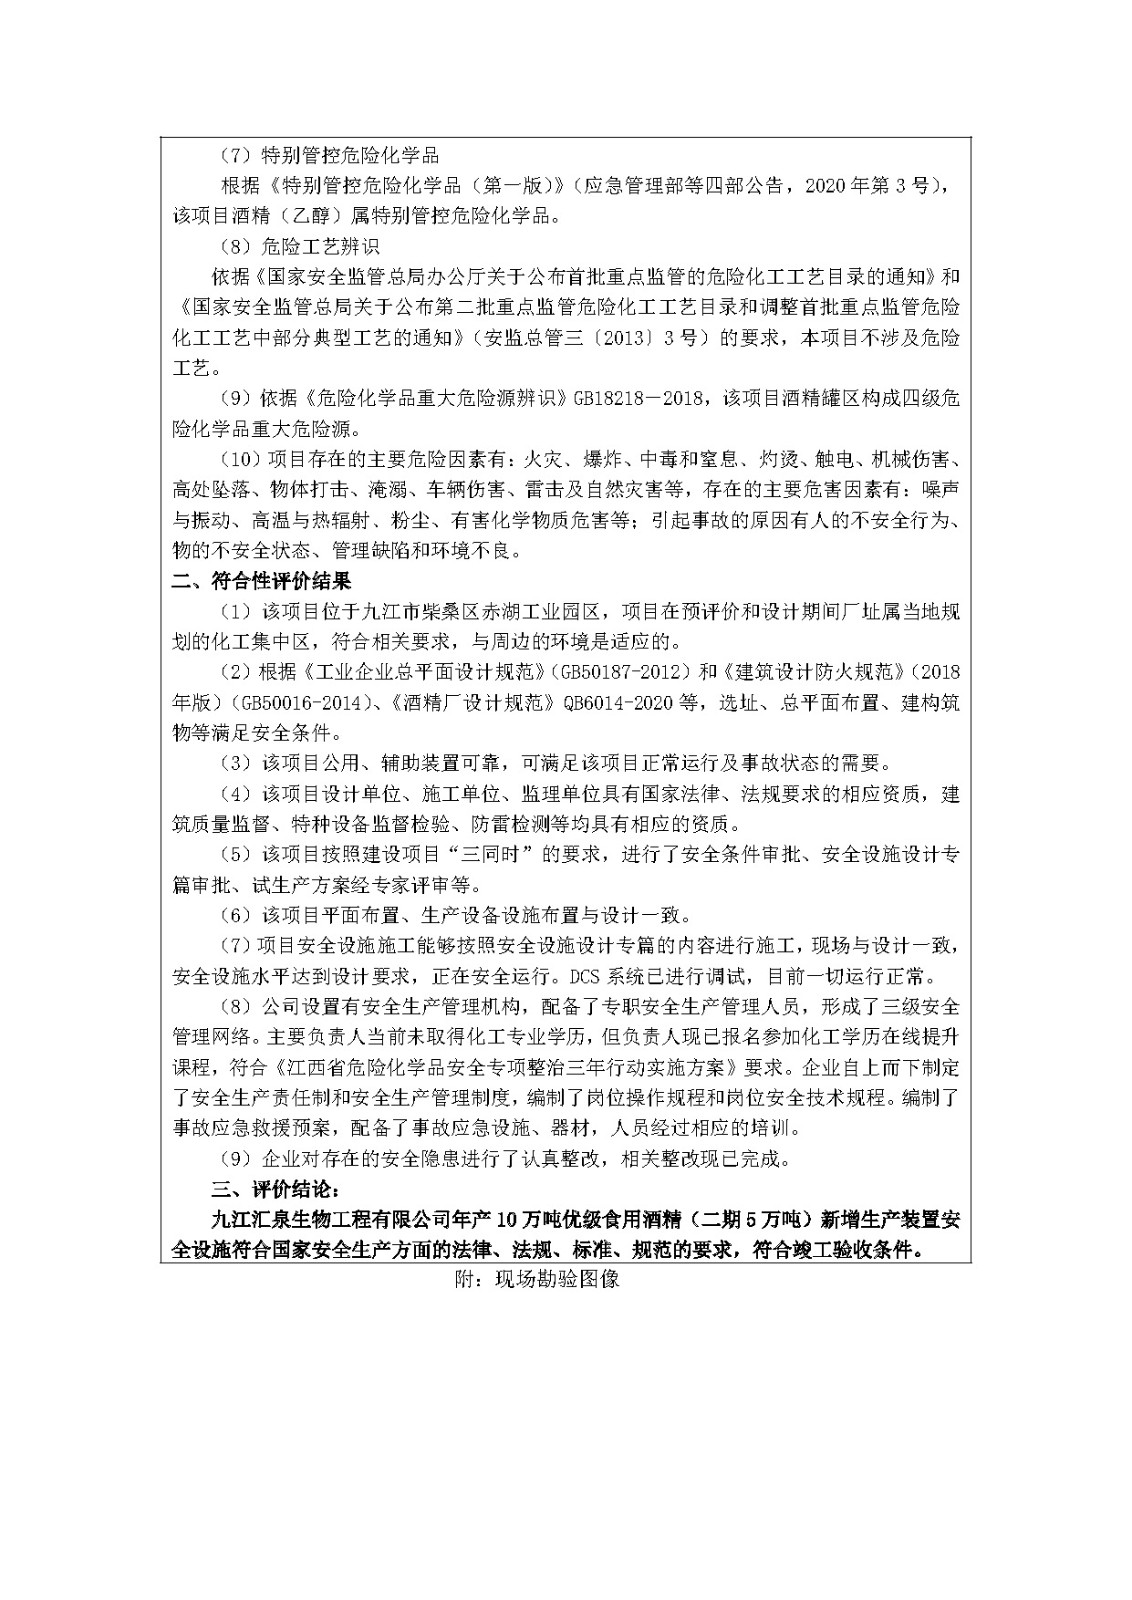 安全评价报告基本信息公开表(九江汇泉生物工程有限公司)